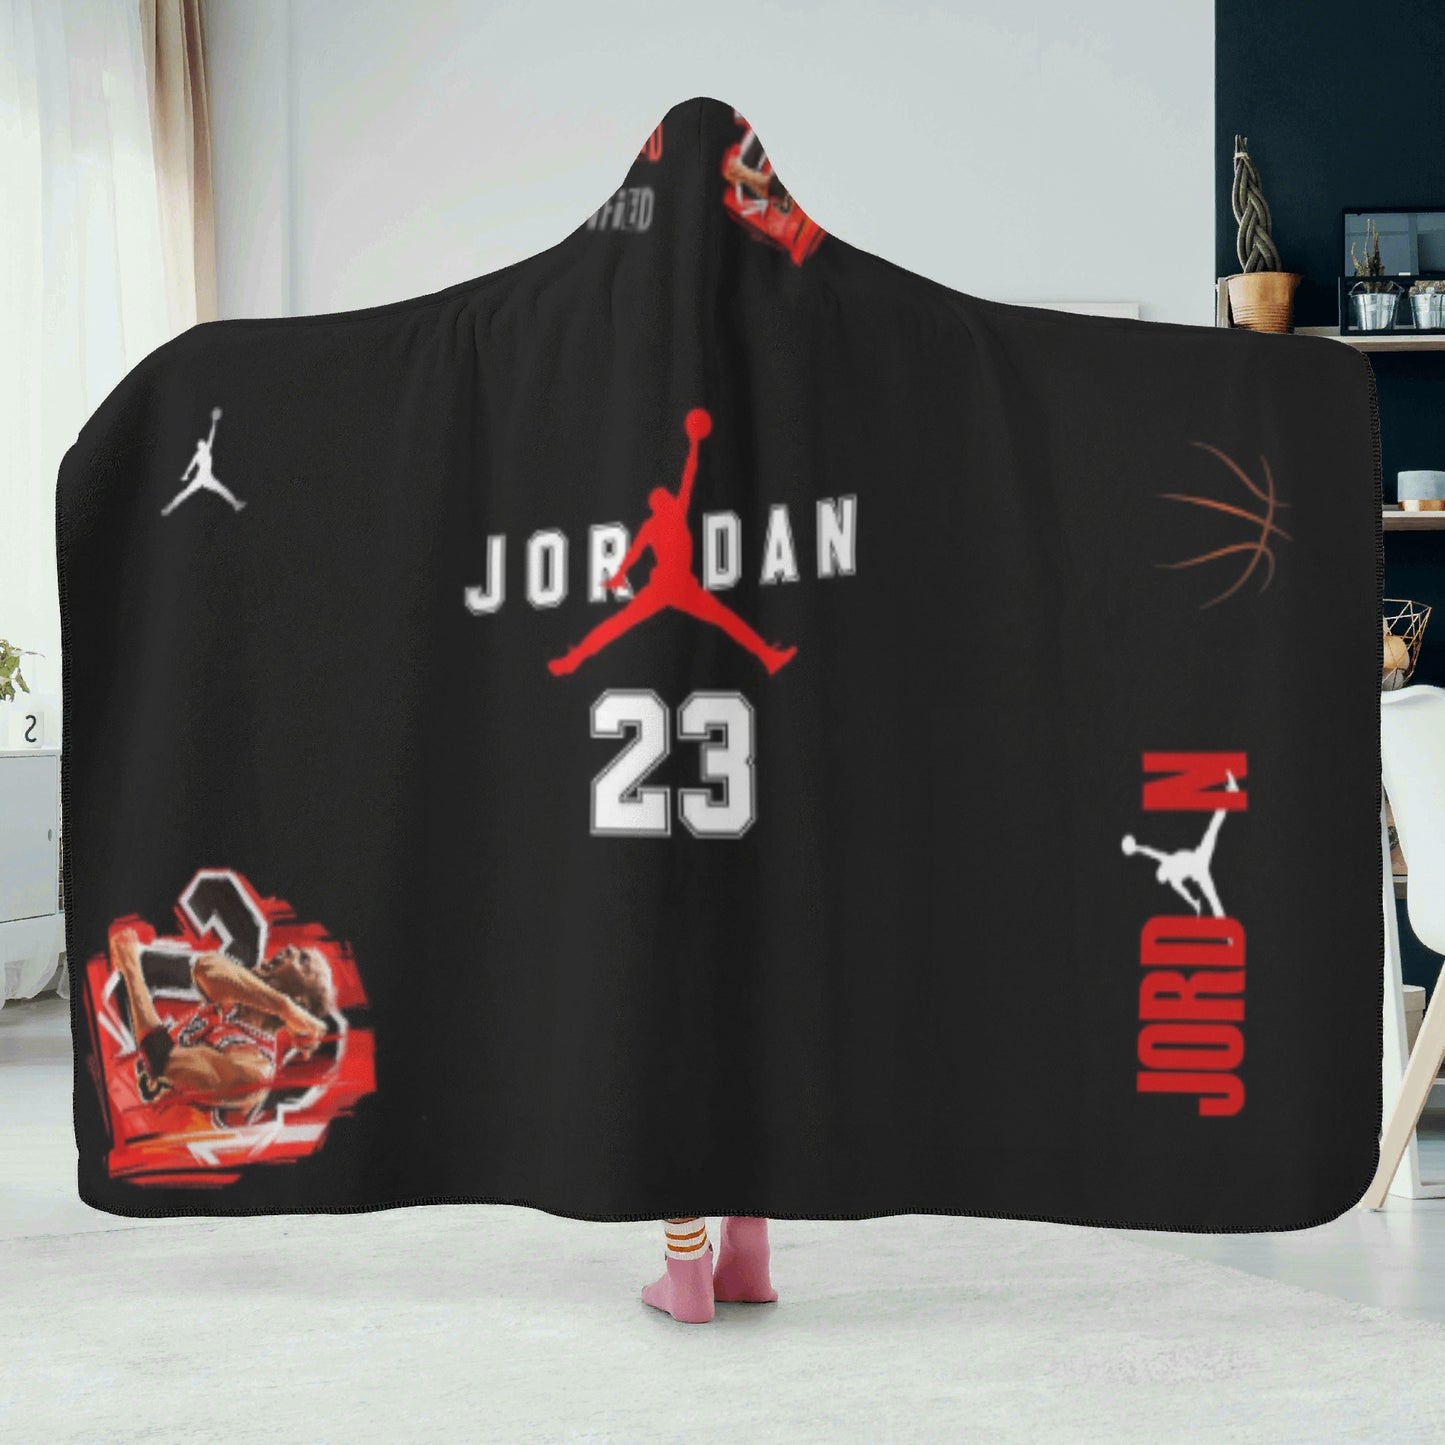 Jordan 23 Hooded Blanket